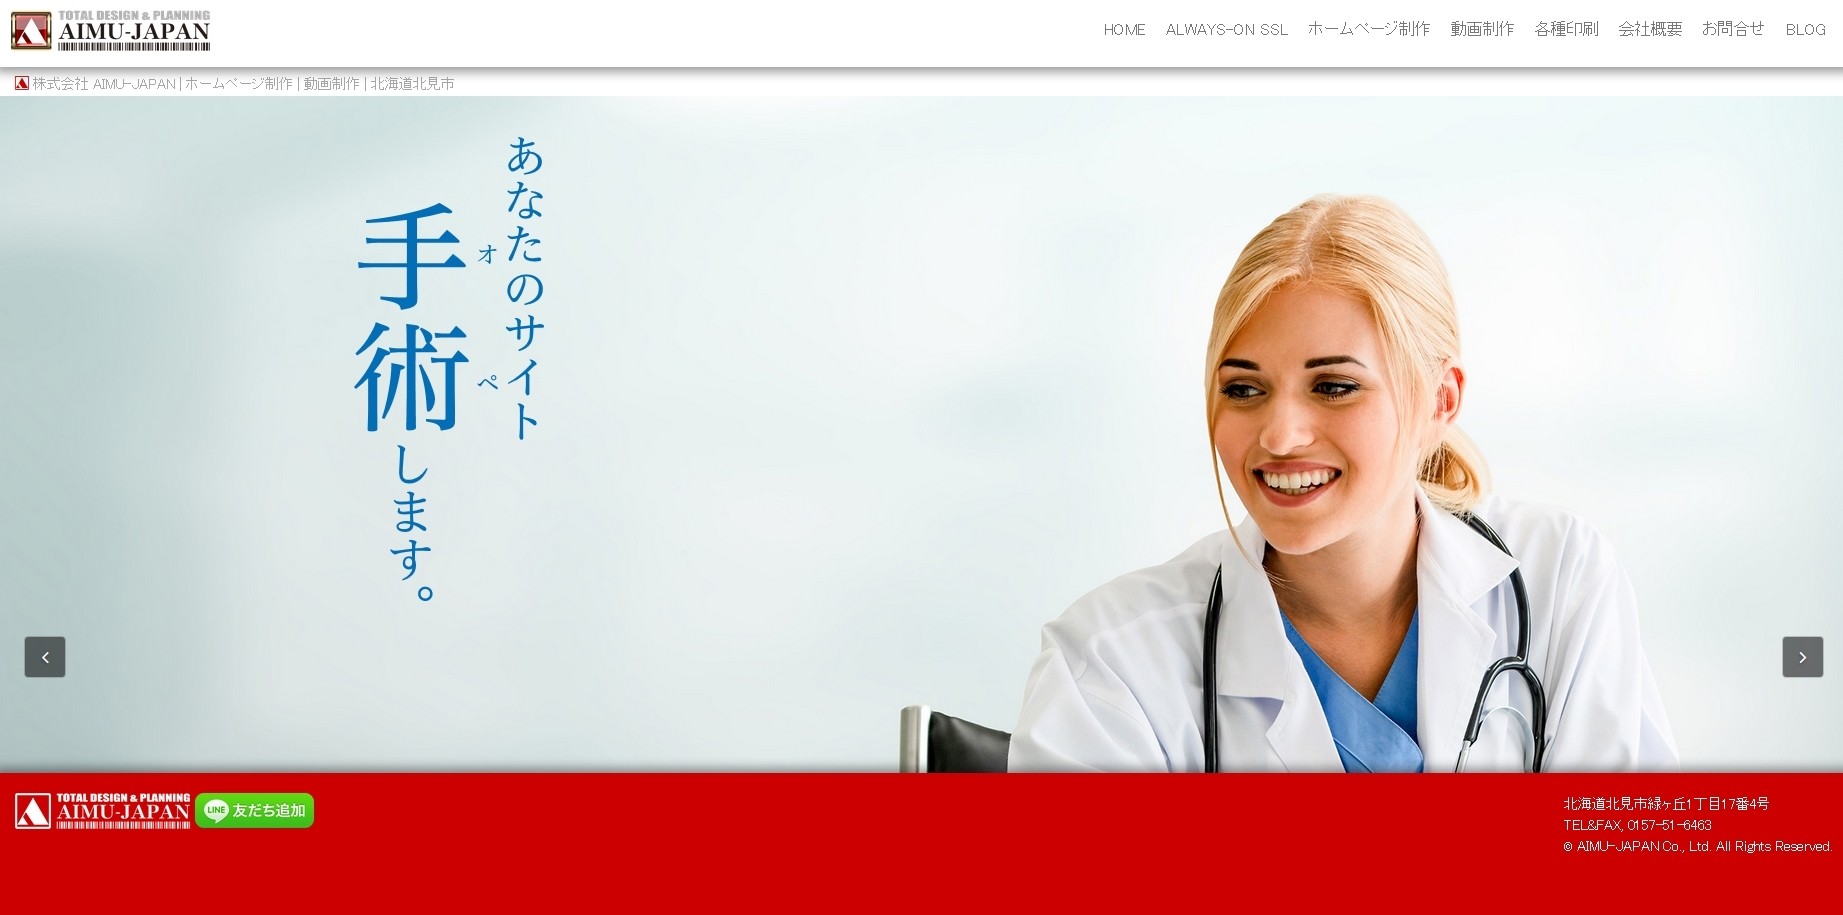 株式会社AIMU-JAPANの株式会社AIMU-JAPANサービス